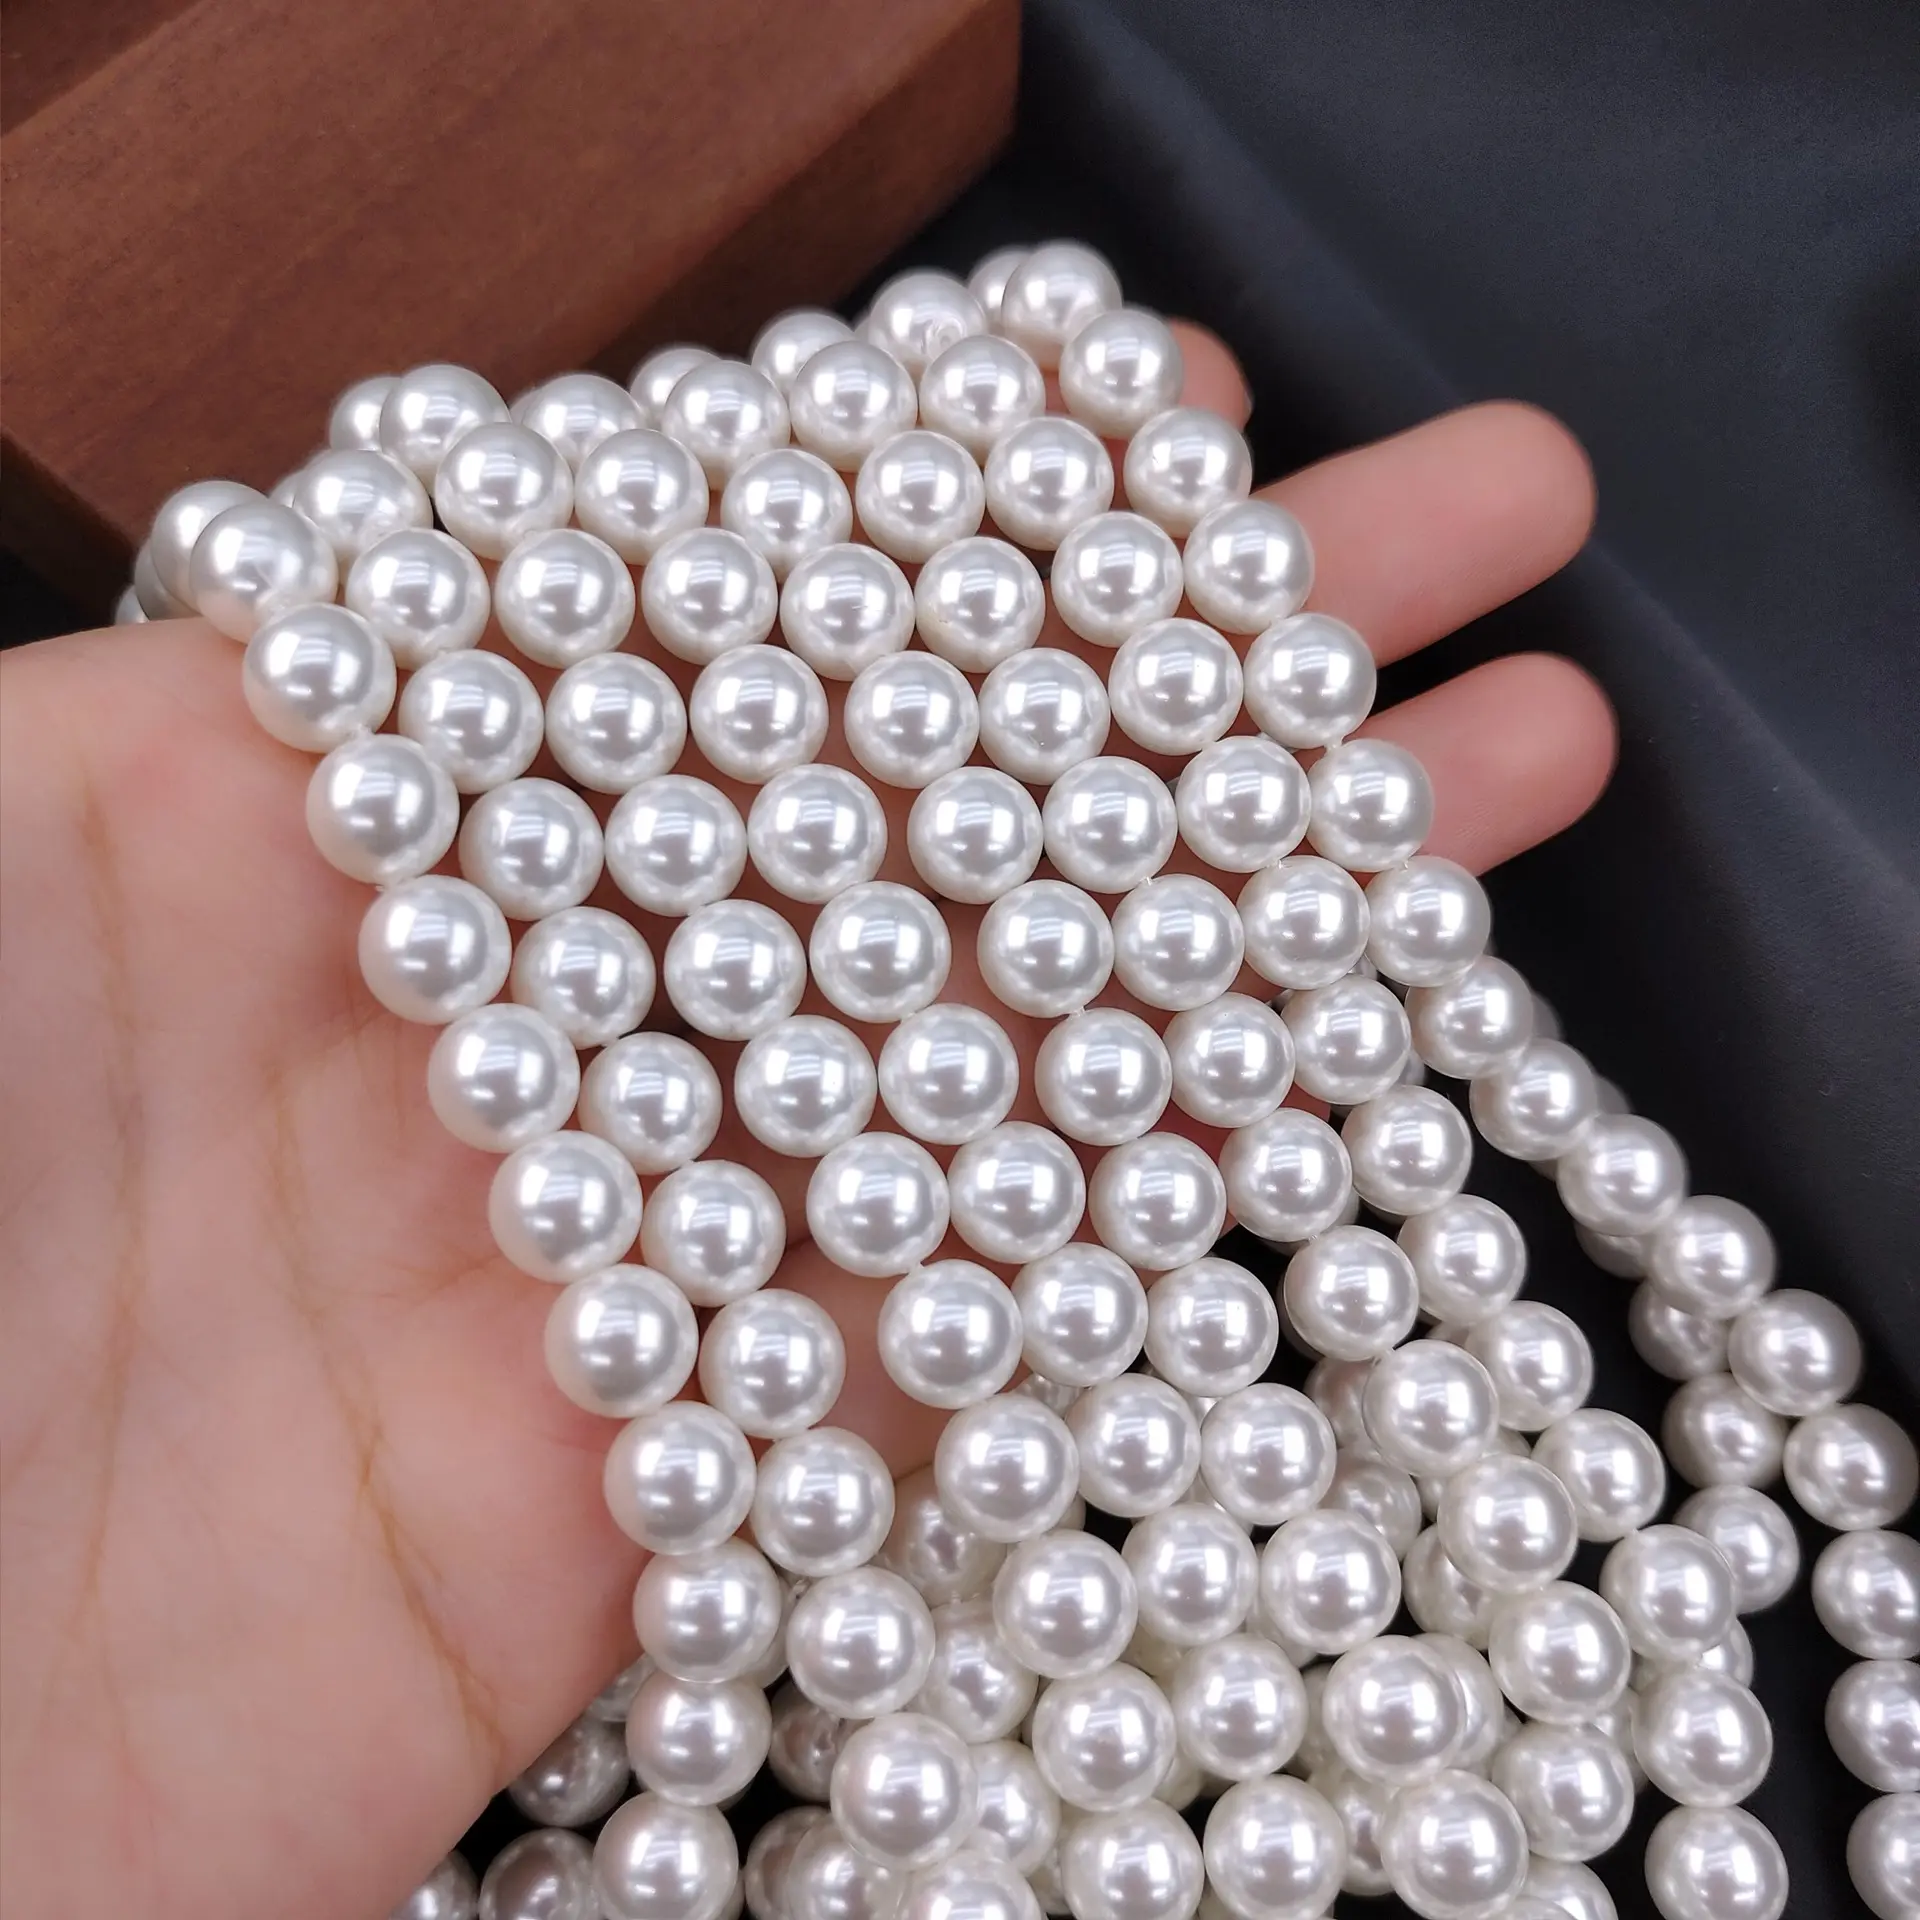 Commercio all'ingrosso 3-12mm perline di conchiglie imitazione mare del sud perle bianche lucide